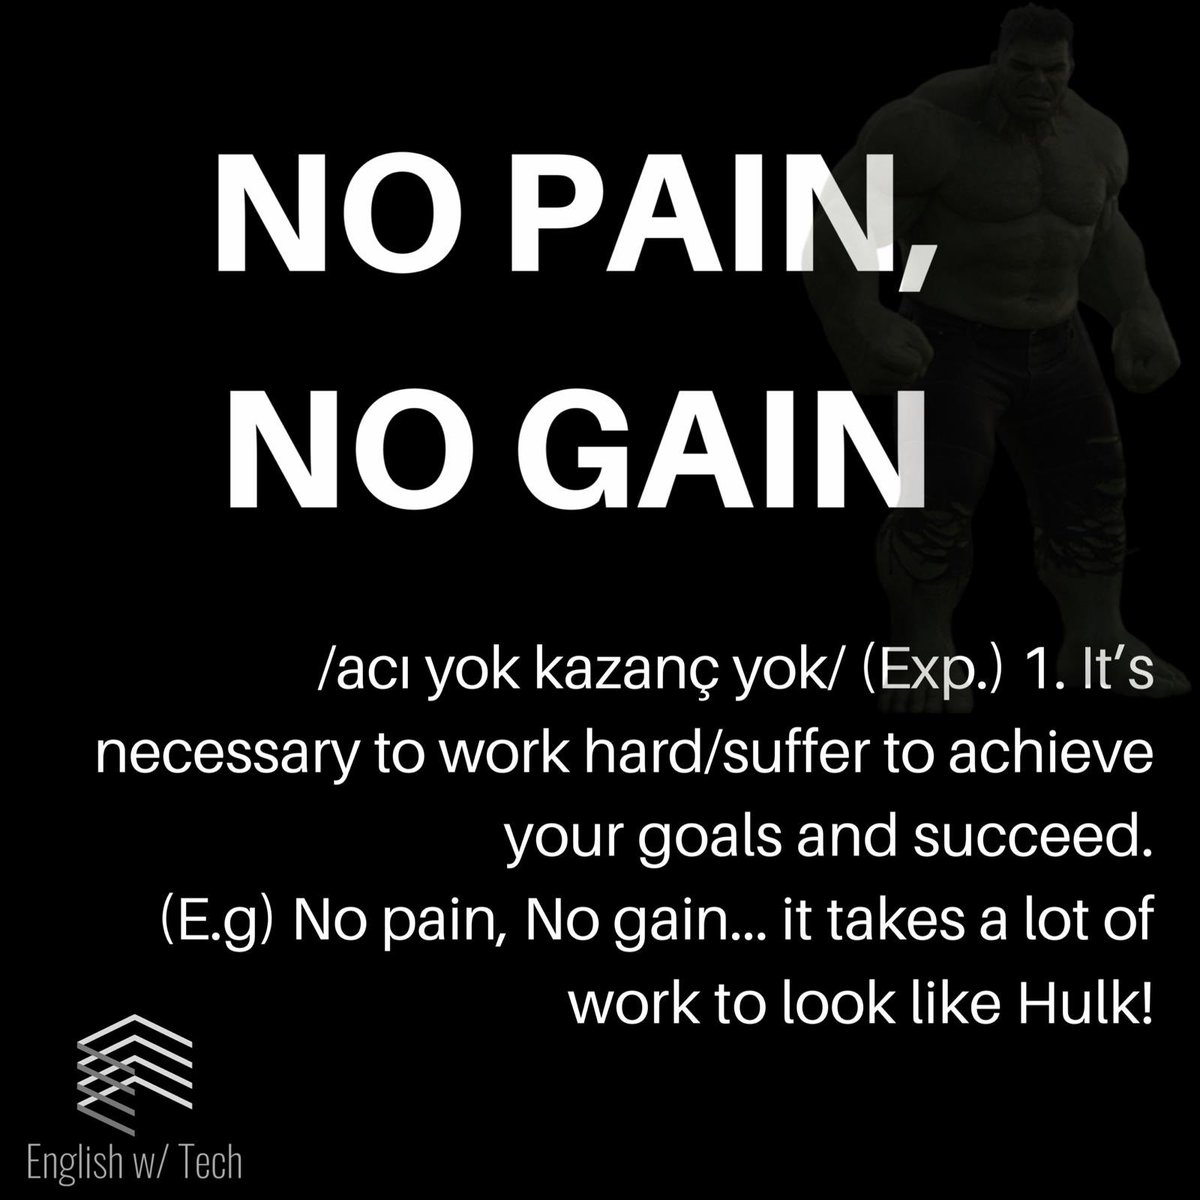 Hedeflerinizi gerçekleştirmek ve başarılı olmak için sıkı çalışmalısınız/acı çekmelisiniz. Örnek: Acı yoksa kazanç yok, Hulk gibi görünmek çok çalışma gerektirir🤪💪🏋️‍♂️
englishwtech.com
#ingilizcekonusmakulubu #ingilizcekonusuyorum